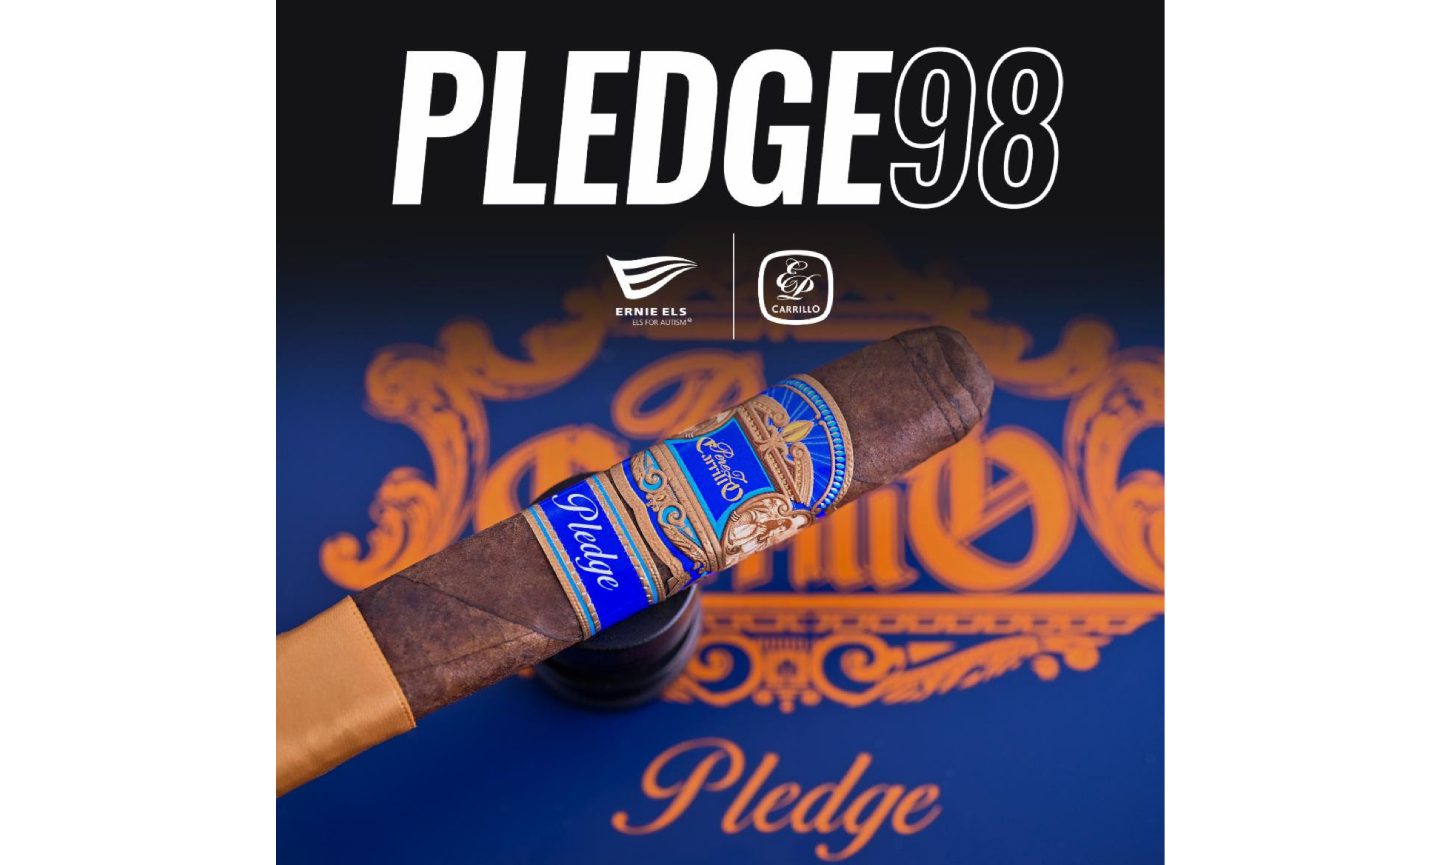 ep.-carrillo-cigar-company-launches-its-annual-pledge98-campaign